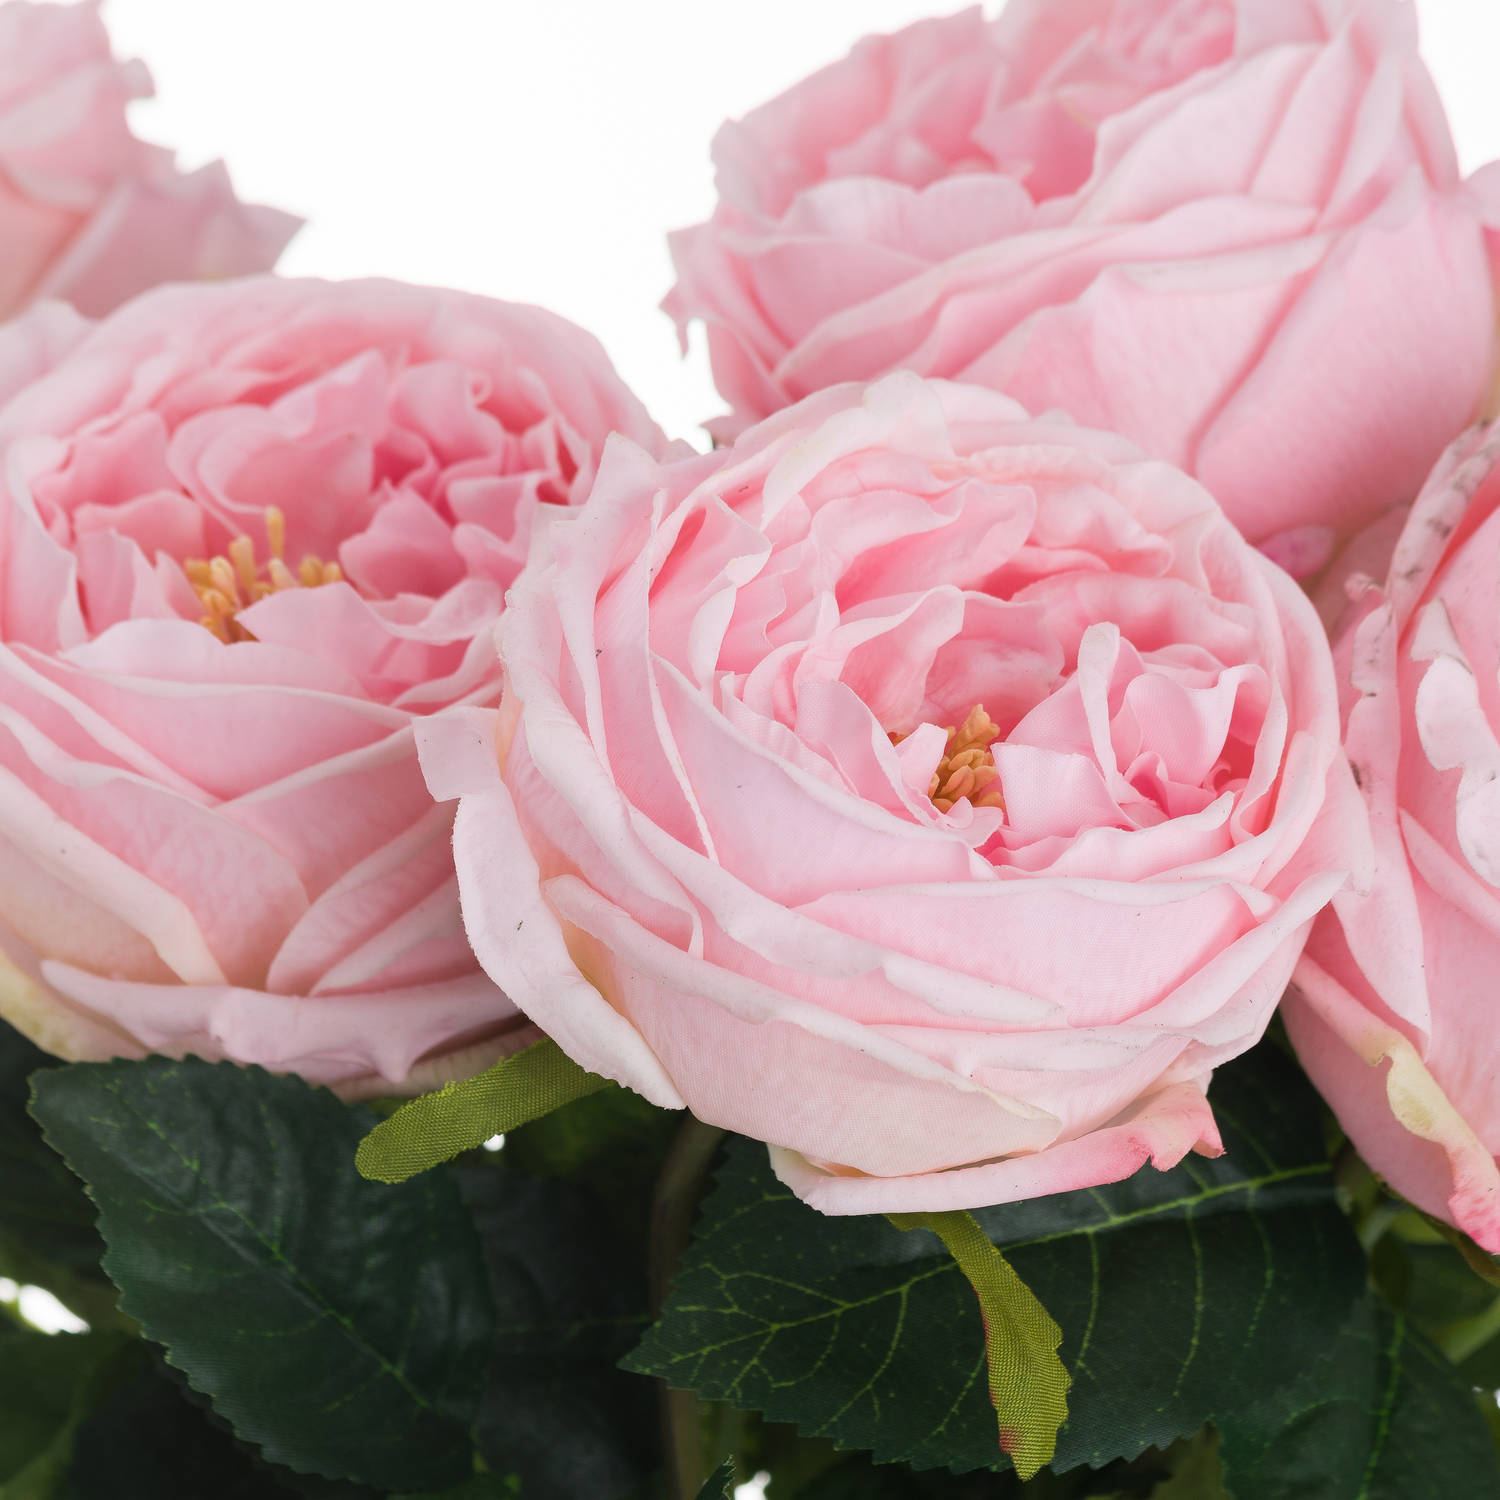 Pastel Pink Portland Rose - Image 2